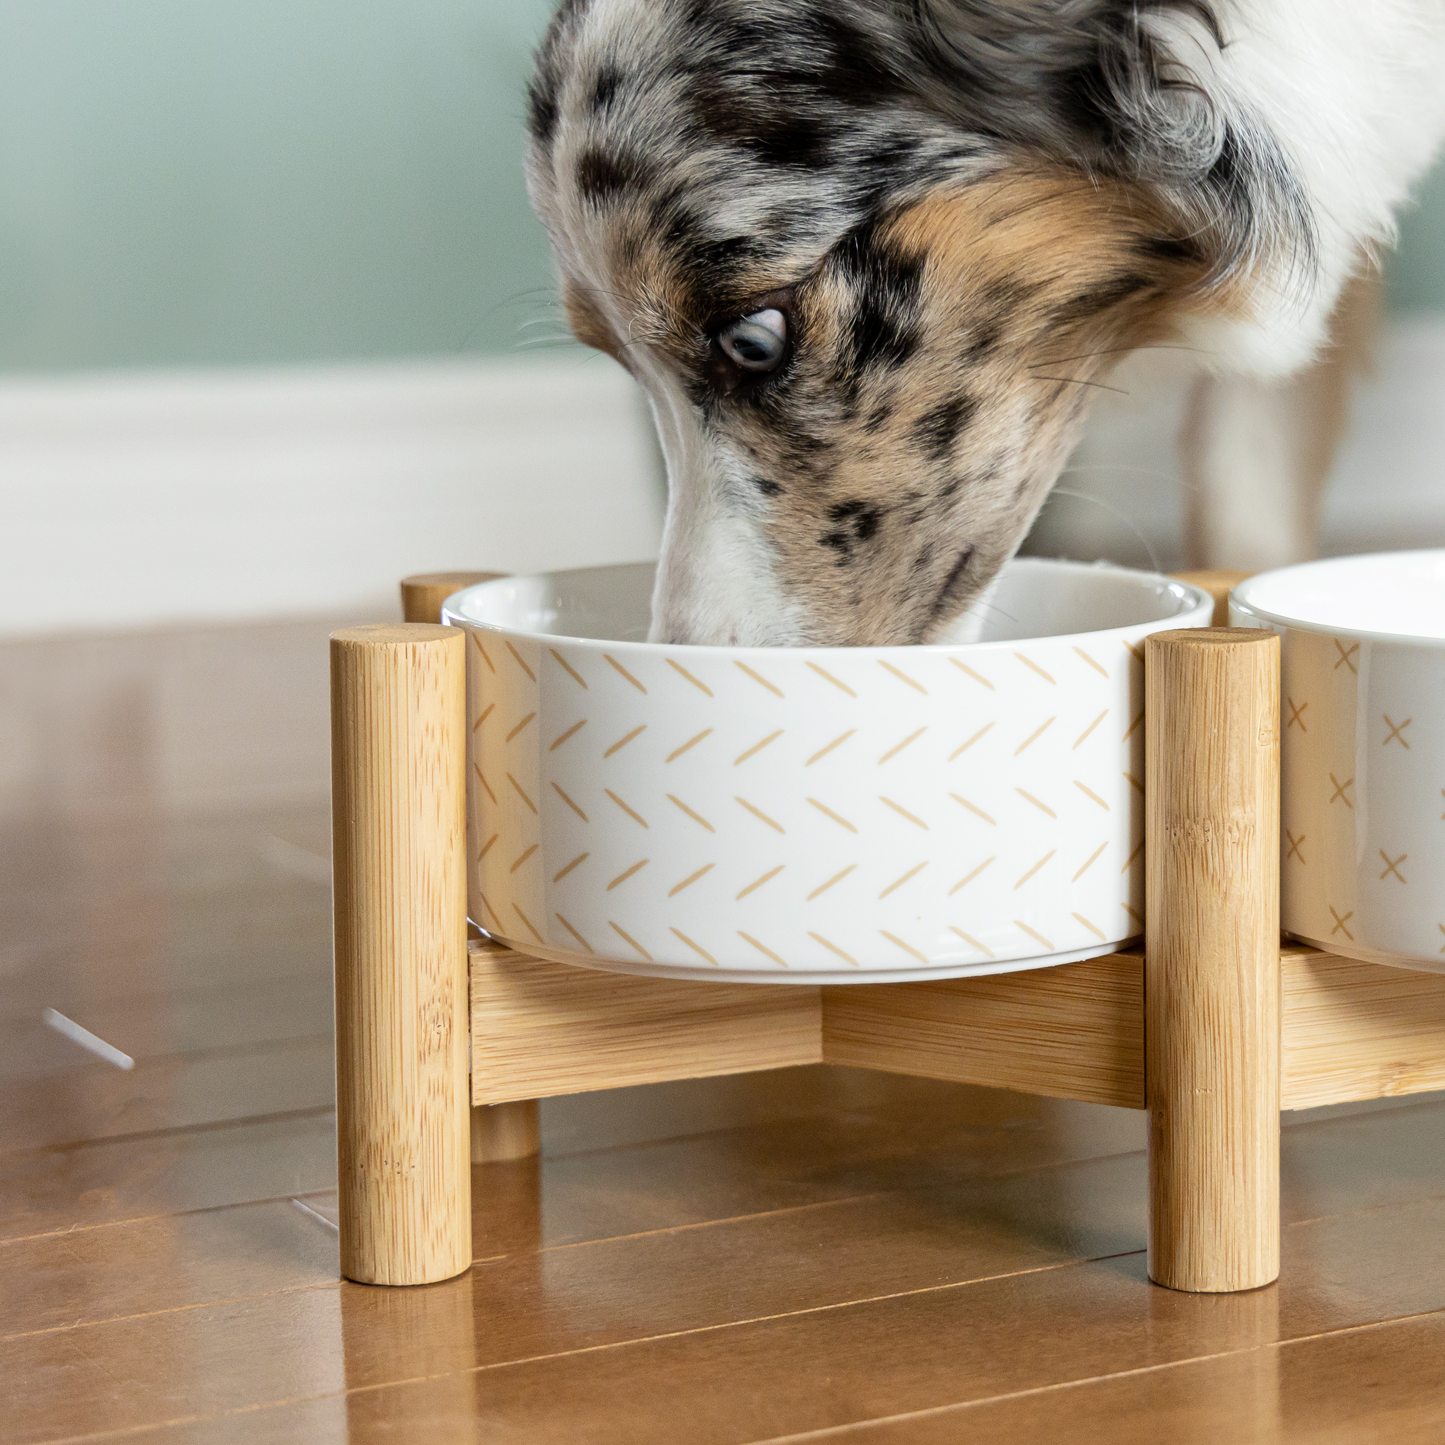 Elevated ceramic bowls on bamboo base for dog, white